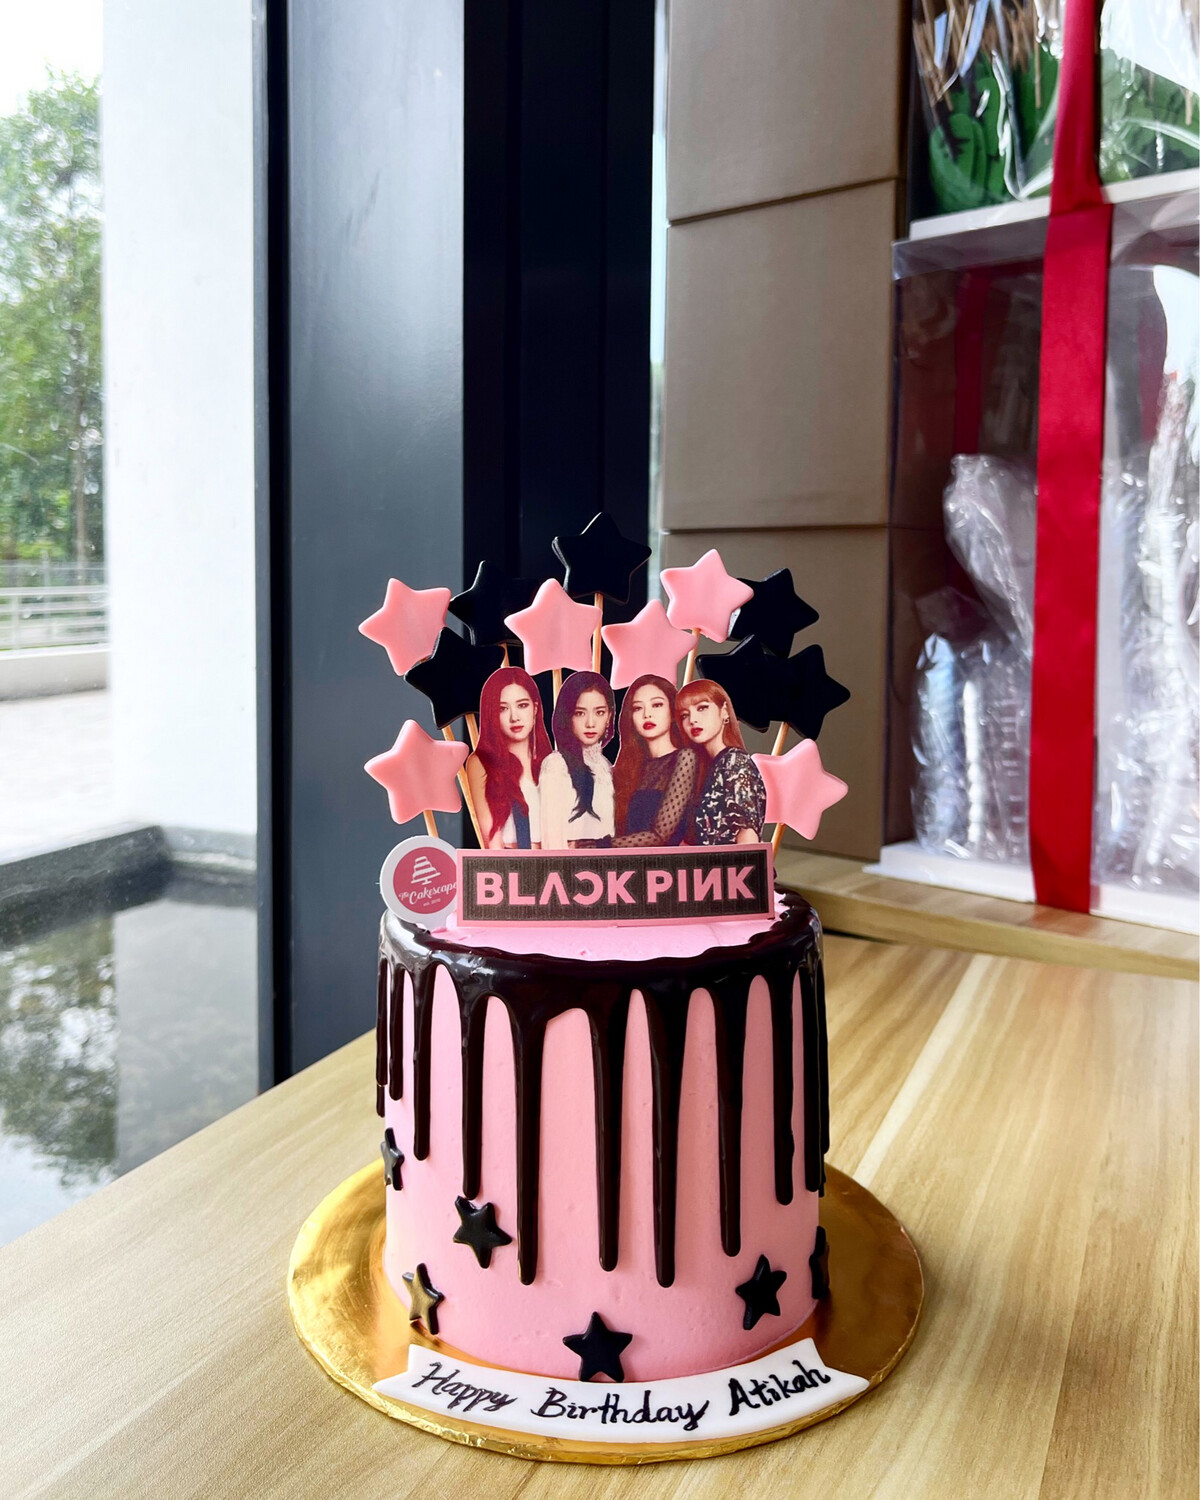 Blackpink / Black Pink Cake 1